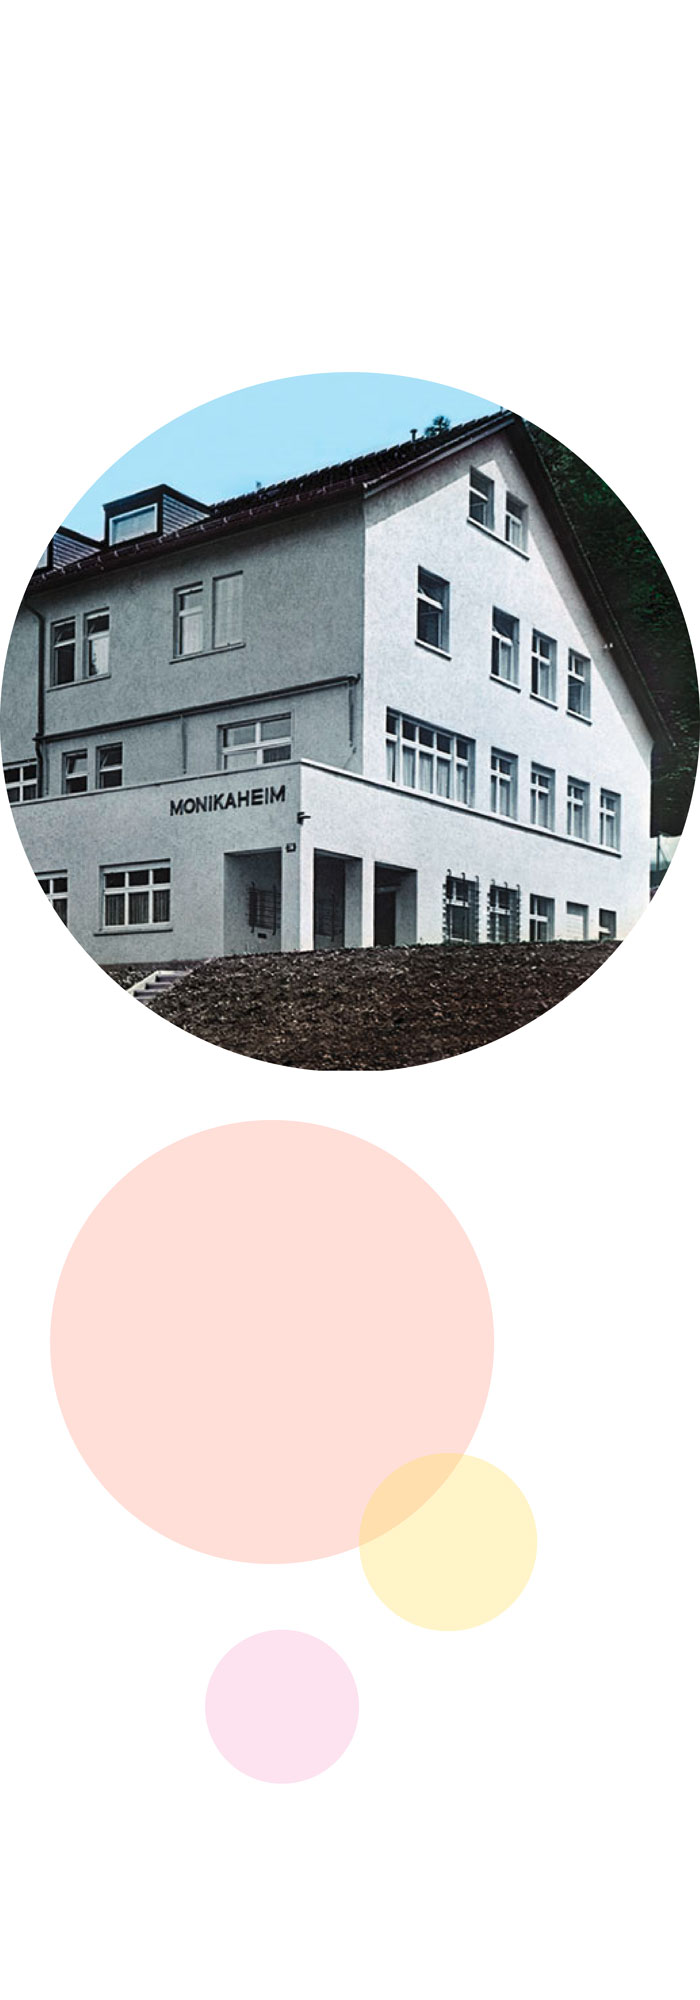 Stiftung Monikaheim - Historische Entwicklung